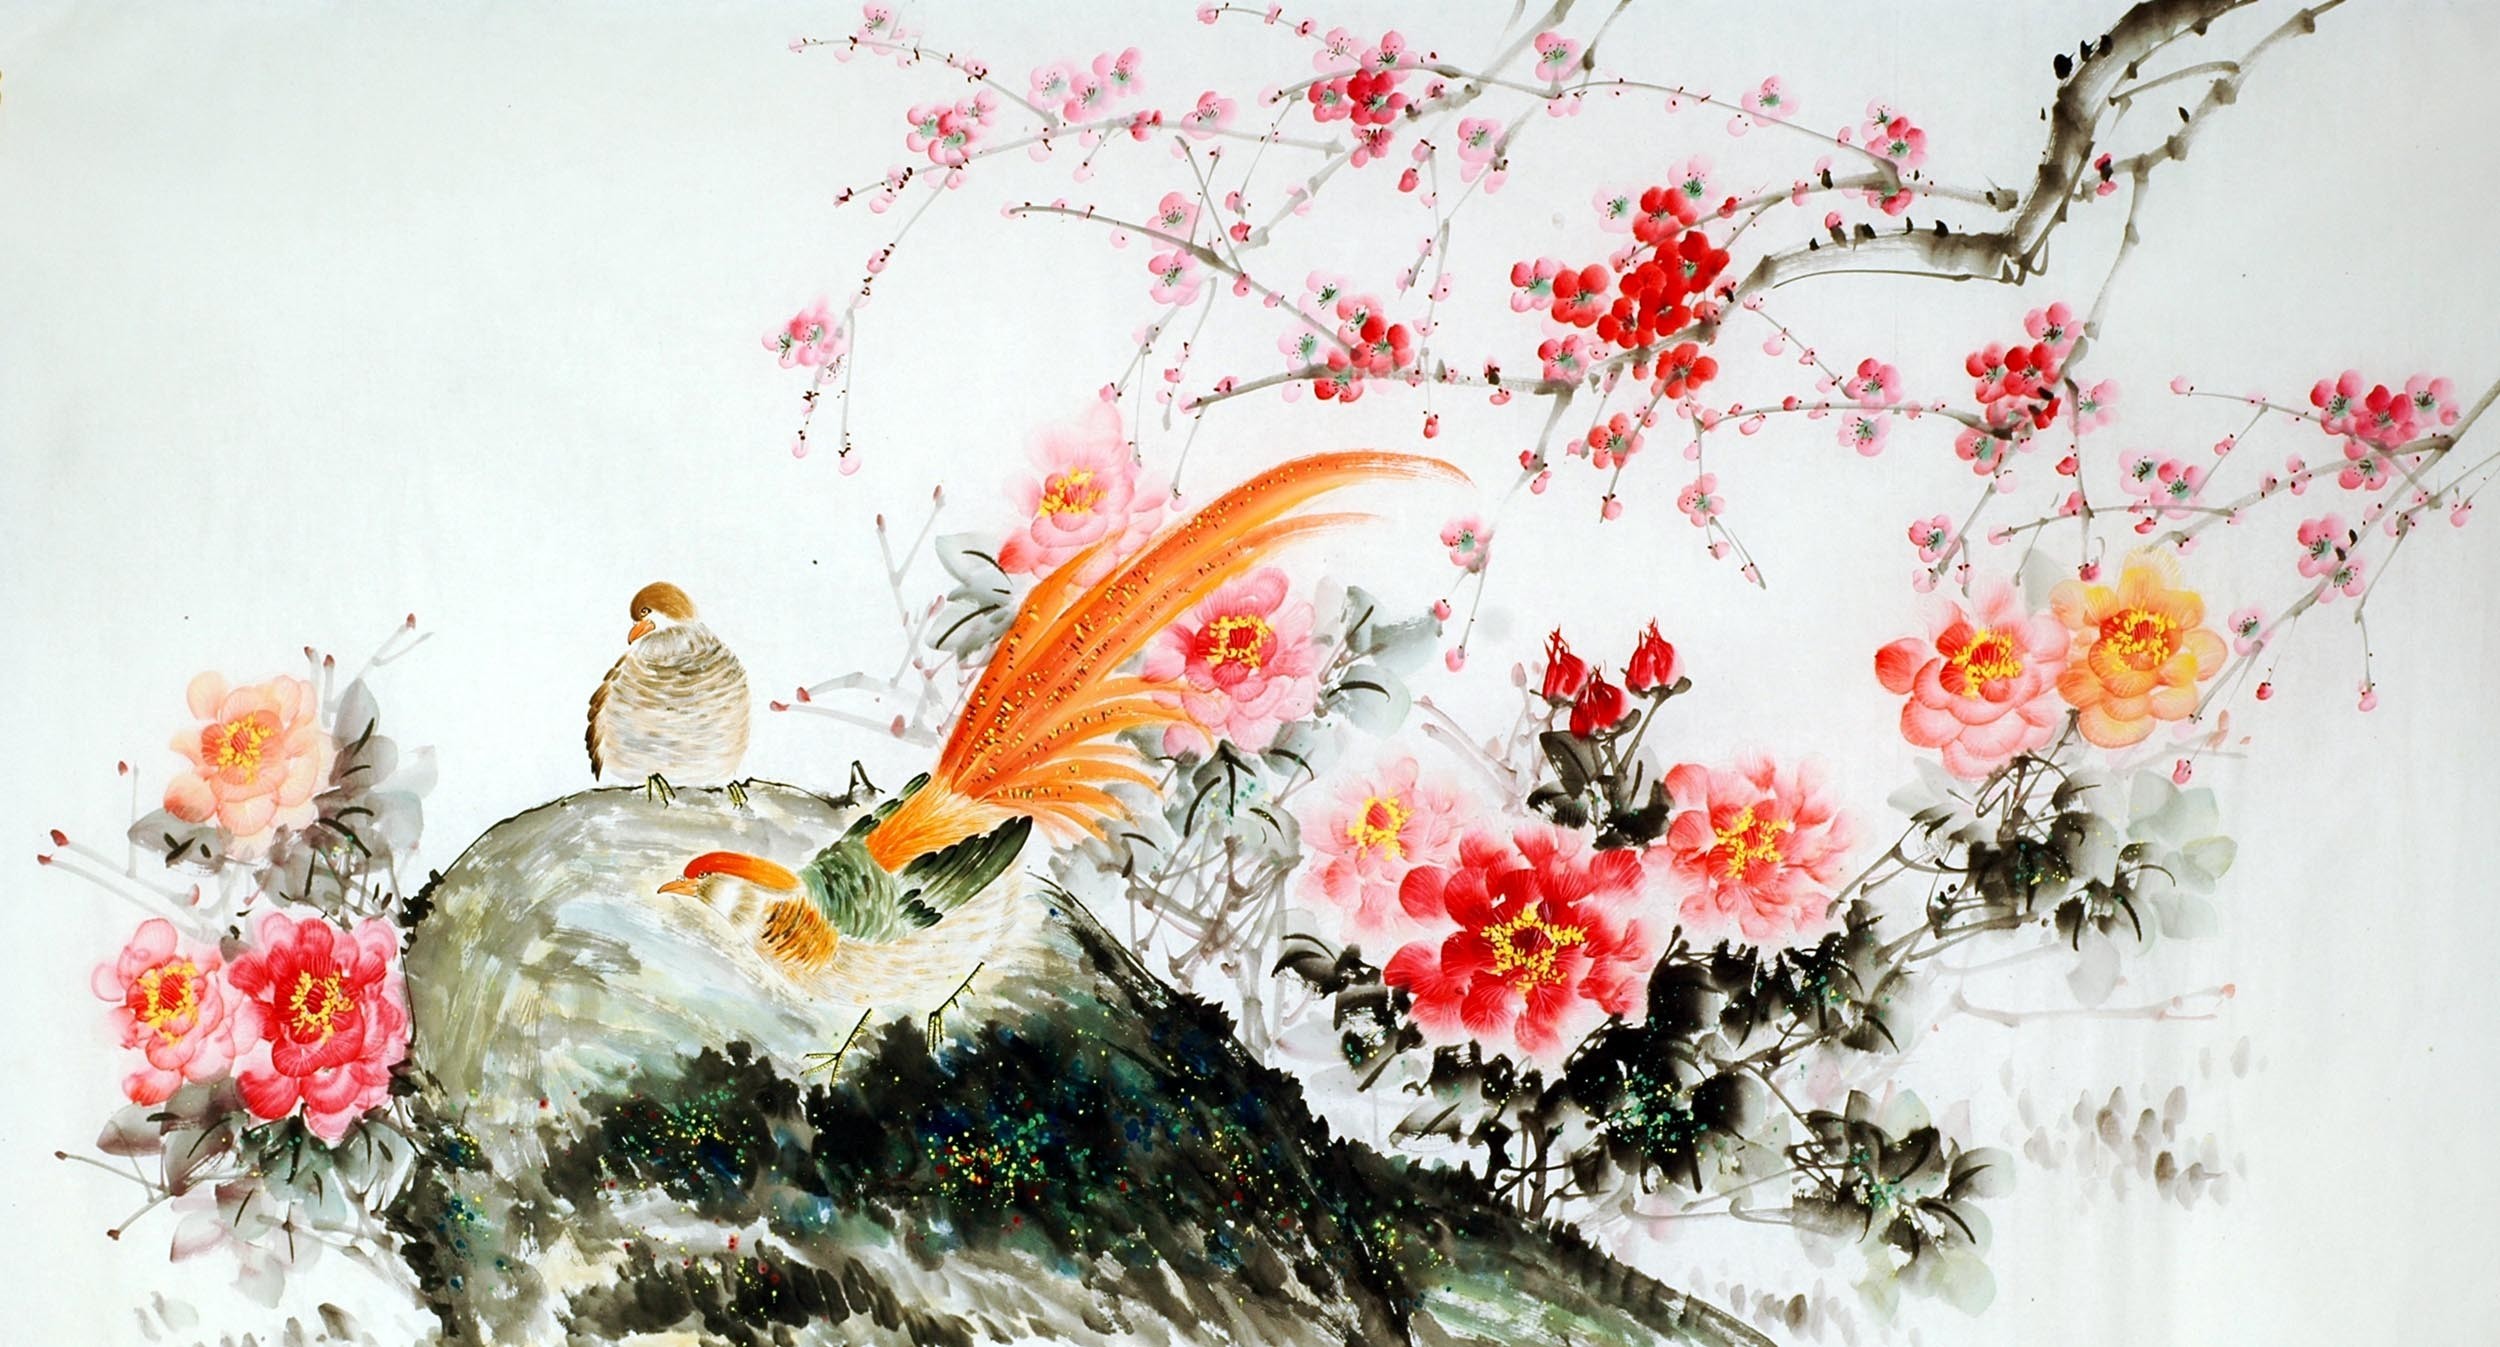 Chinese Chicken Painting - CNAG009295